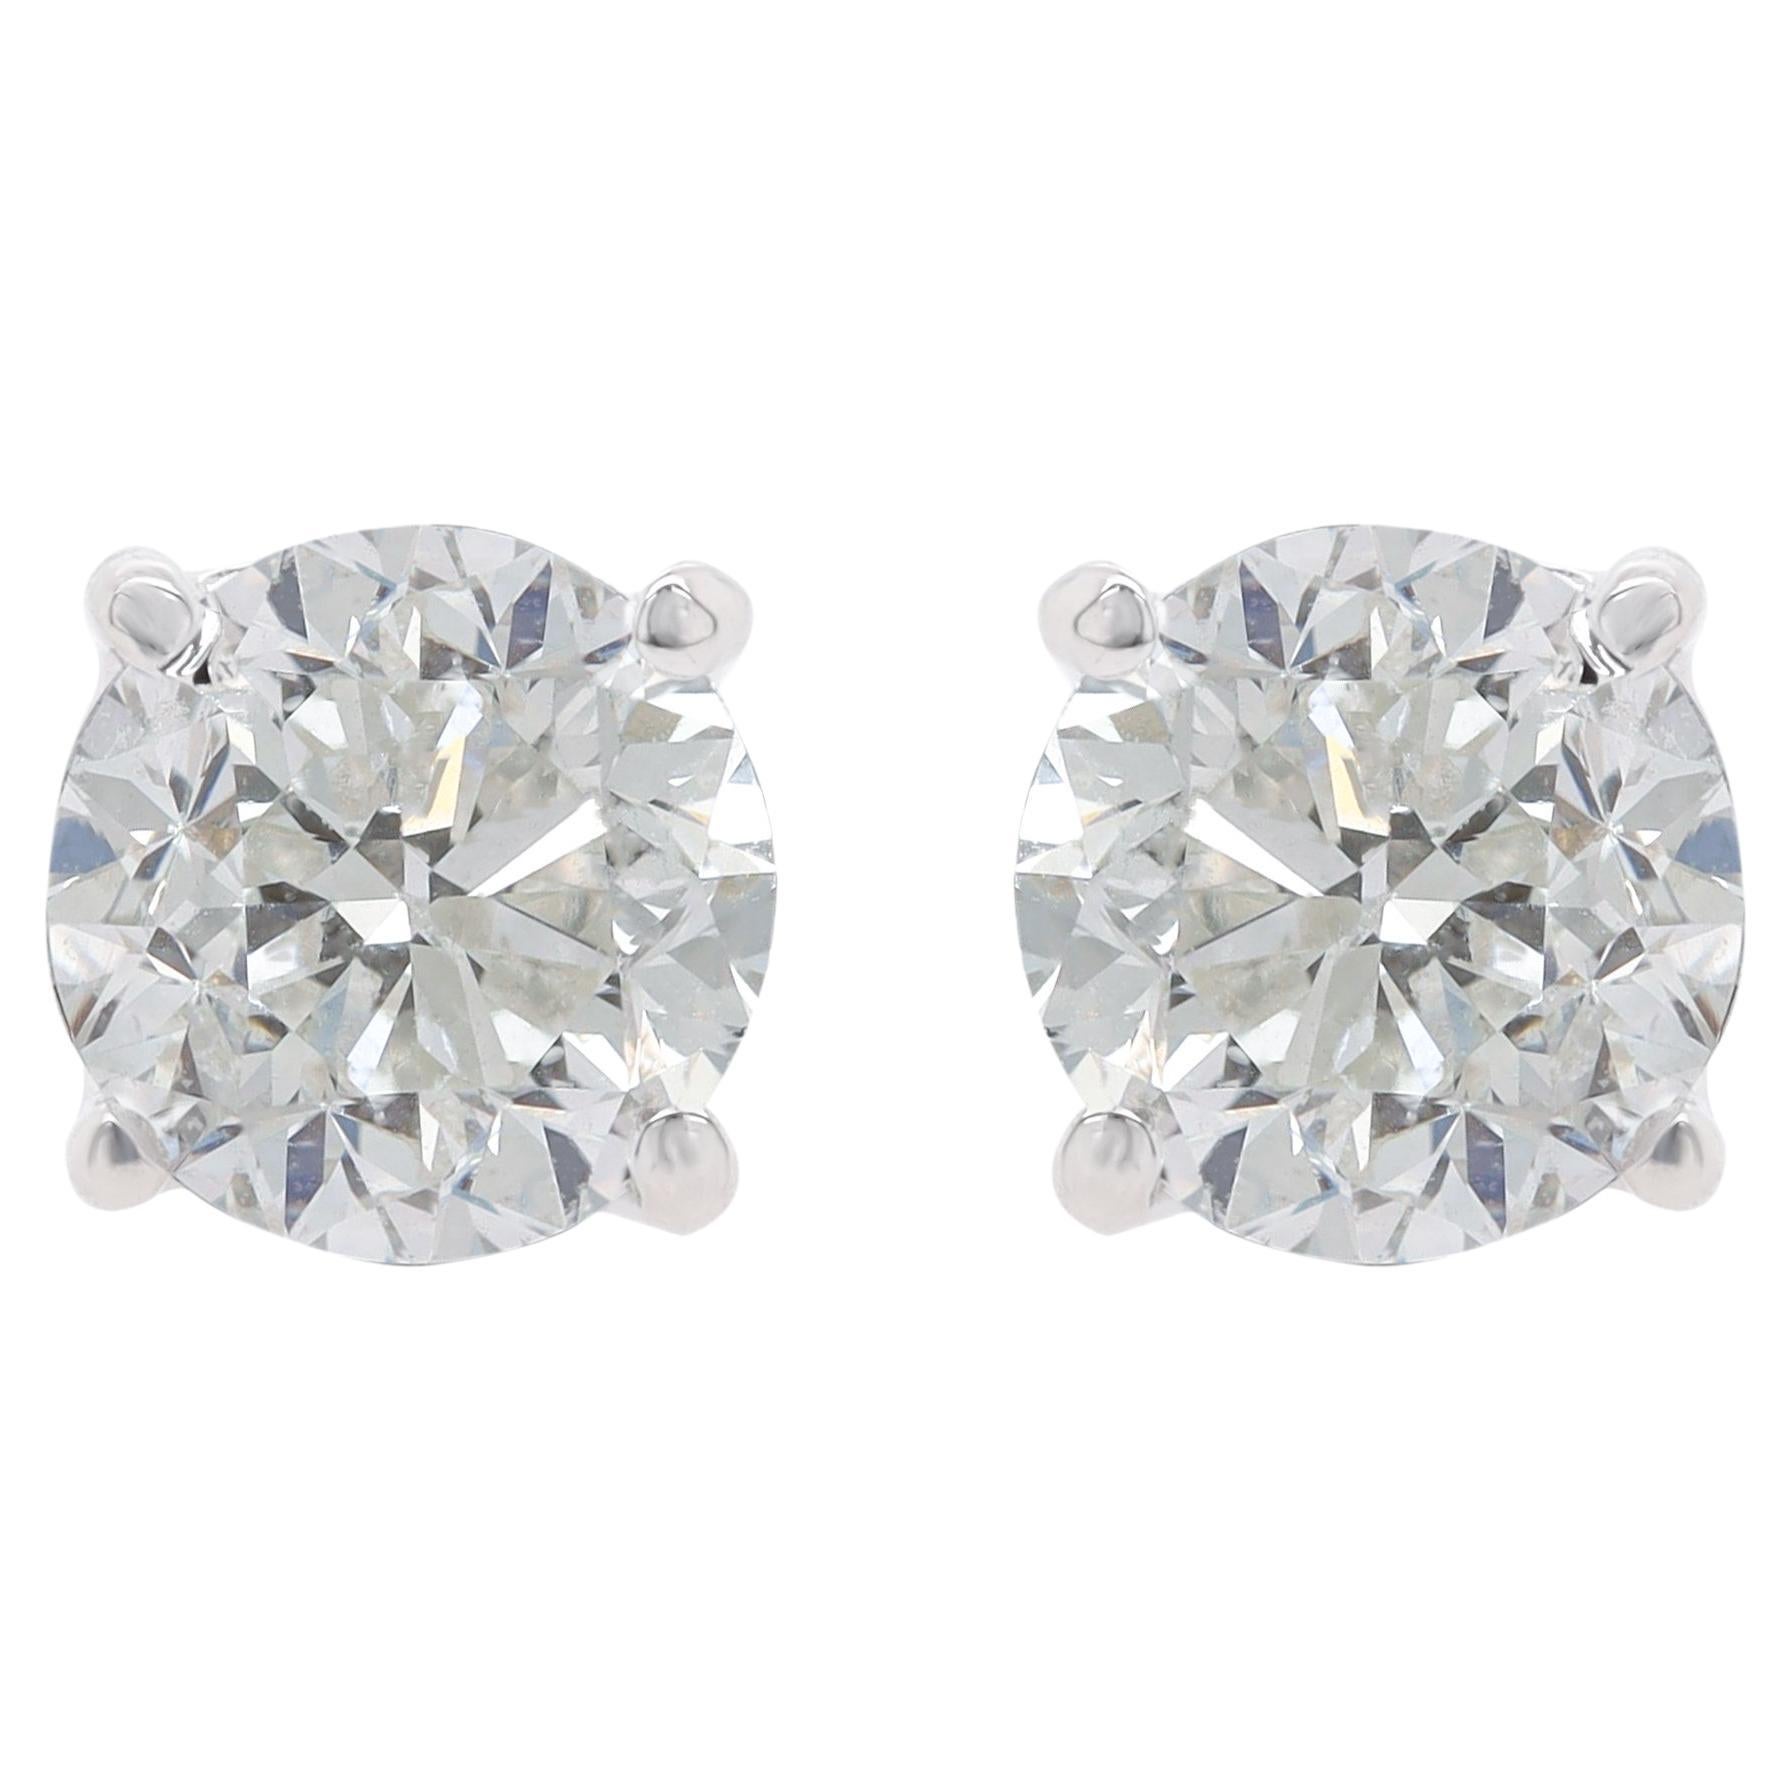 Diana M. 4,02 carats clous de diamants à 4 griffes, couleur GH, pureté SI 